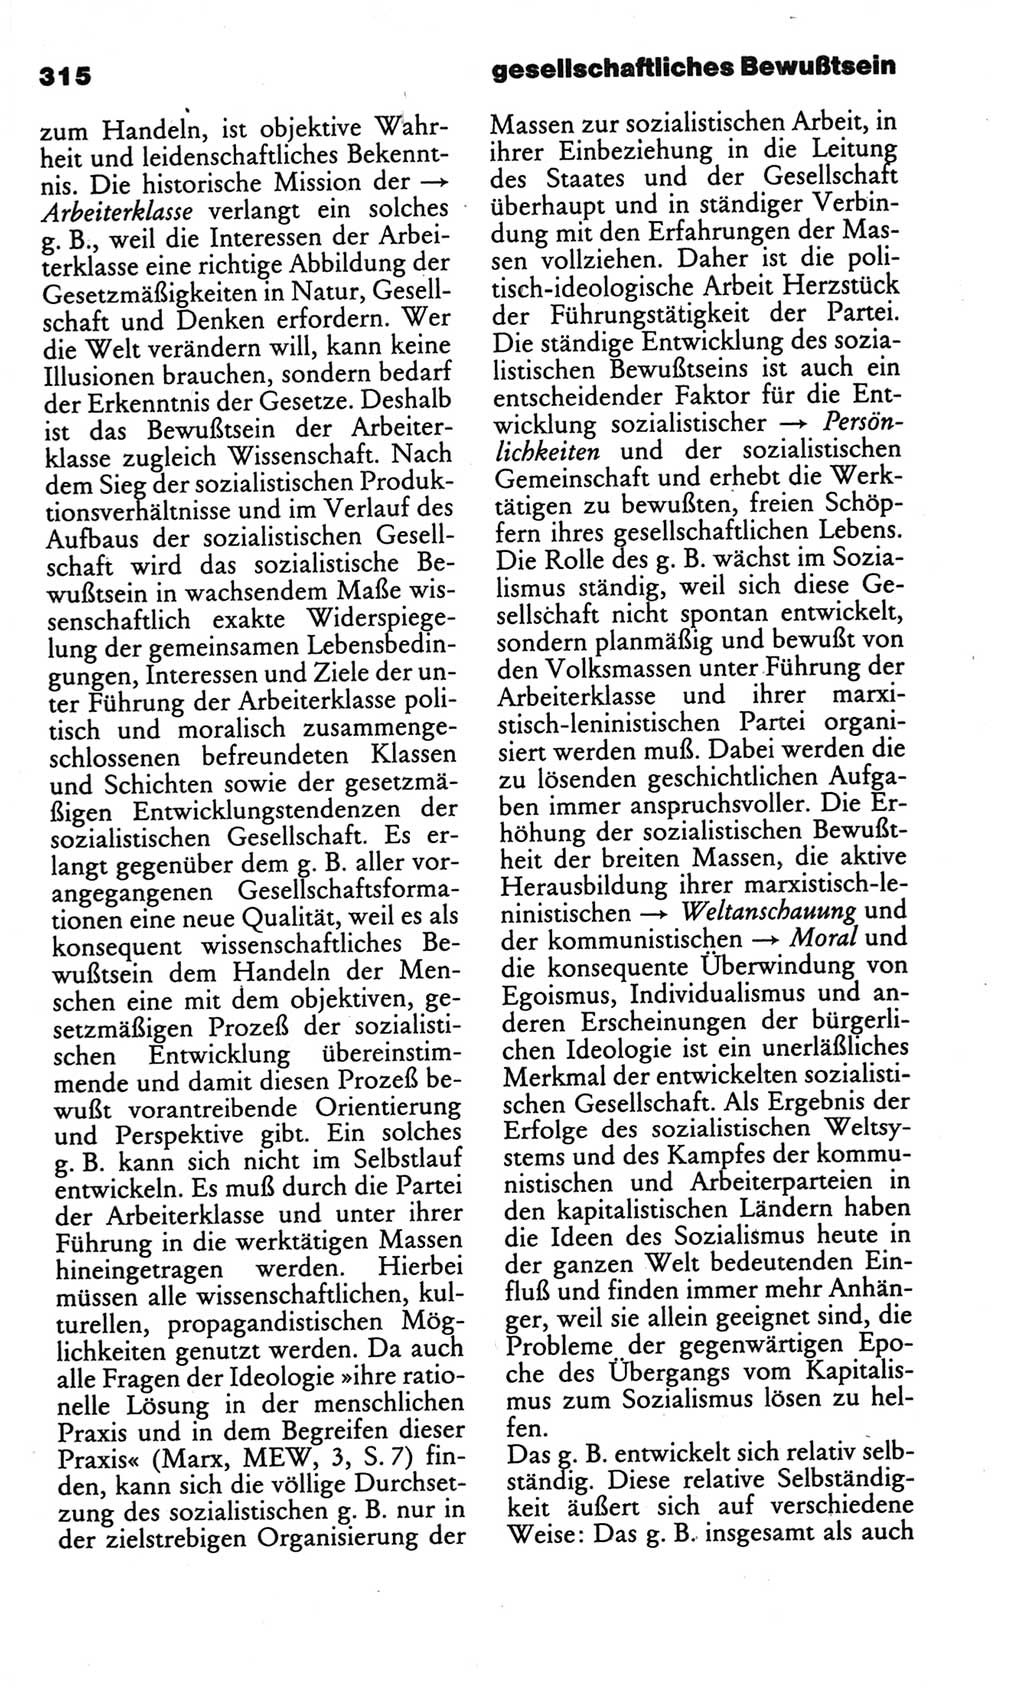 Kleines politisches Wörterbuch [Deutsche Demokratische Republik (DDR)] 1986, Seite 315 (Kl. pol. Wb. DDR 1986, S. 315)